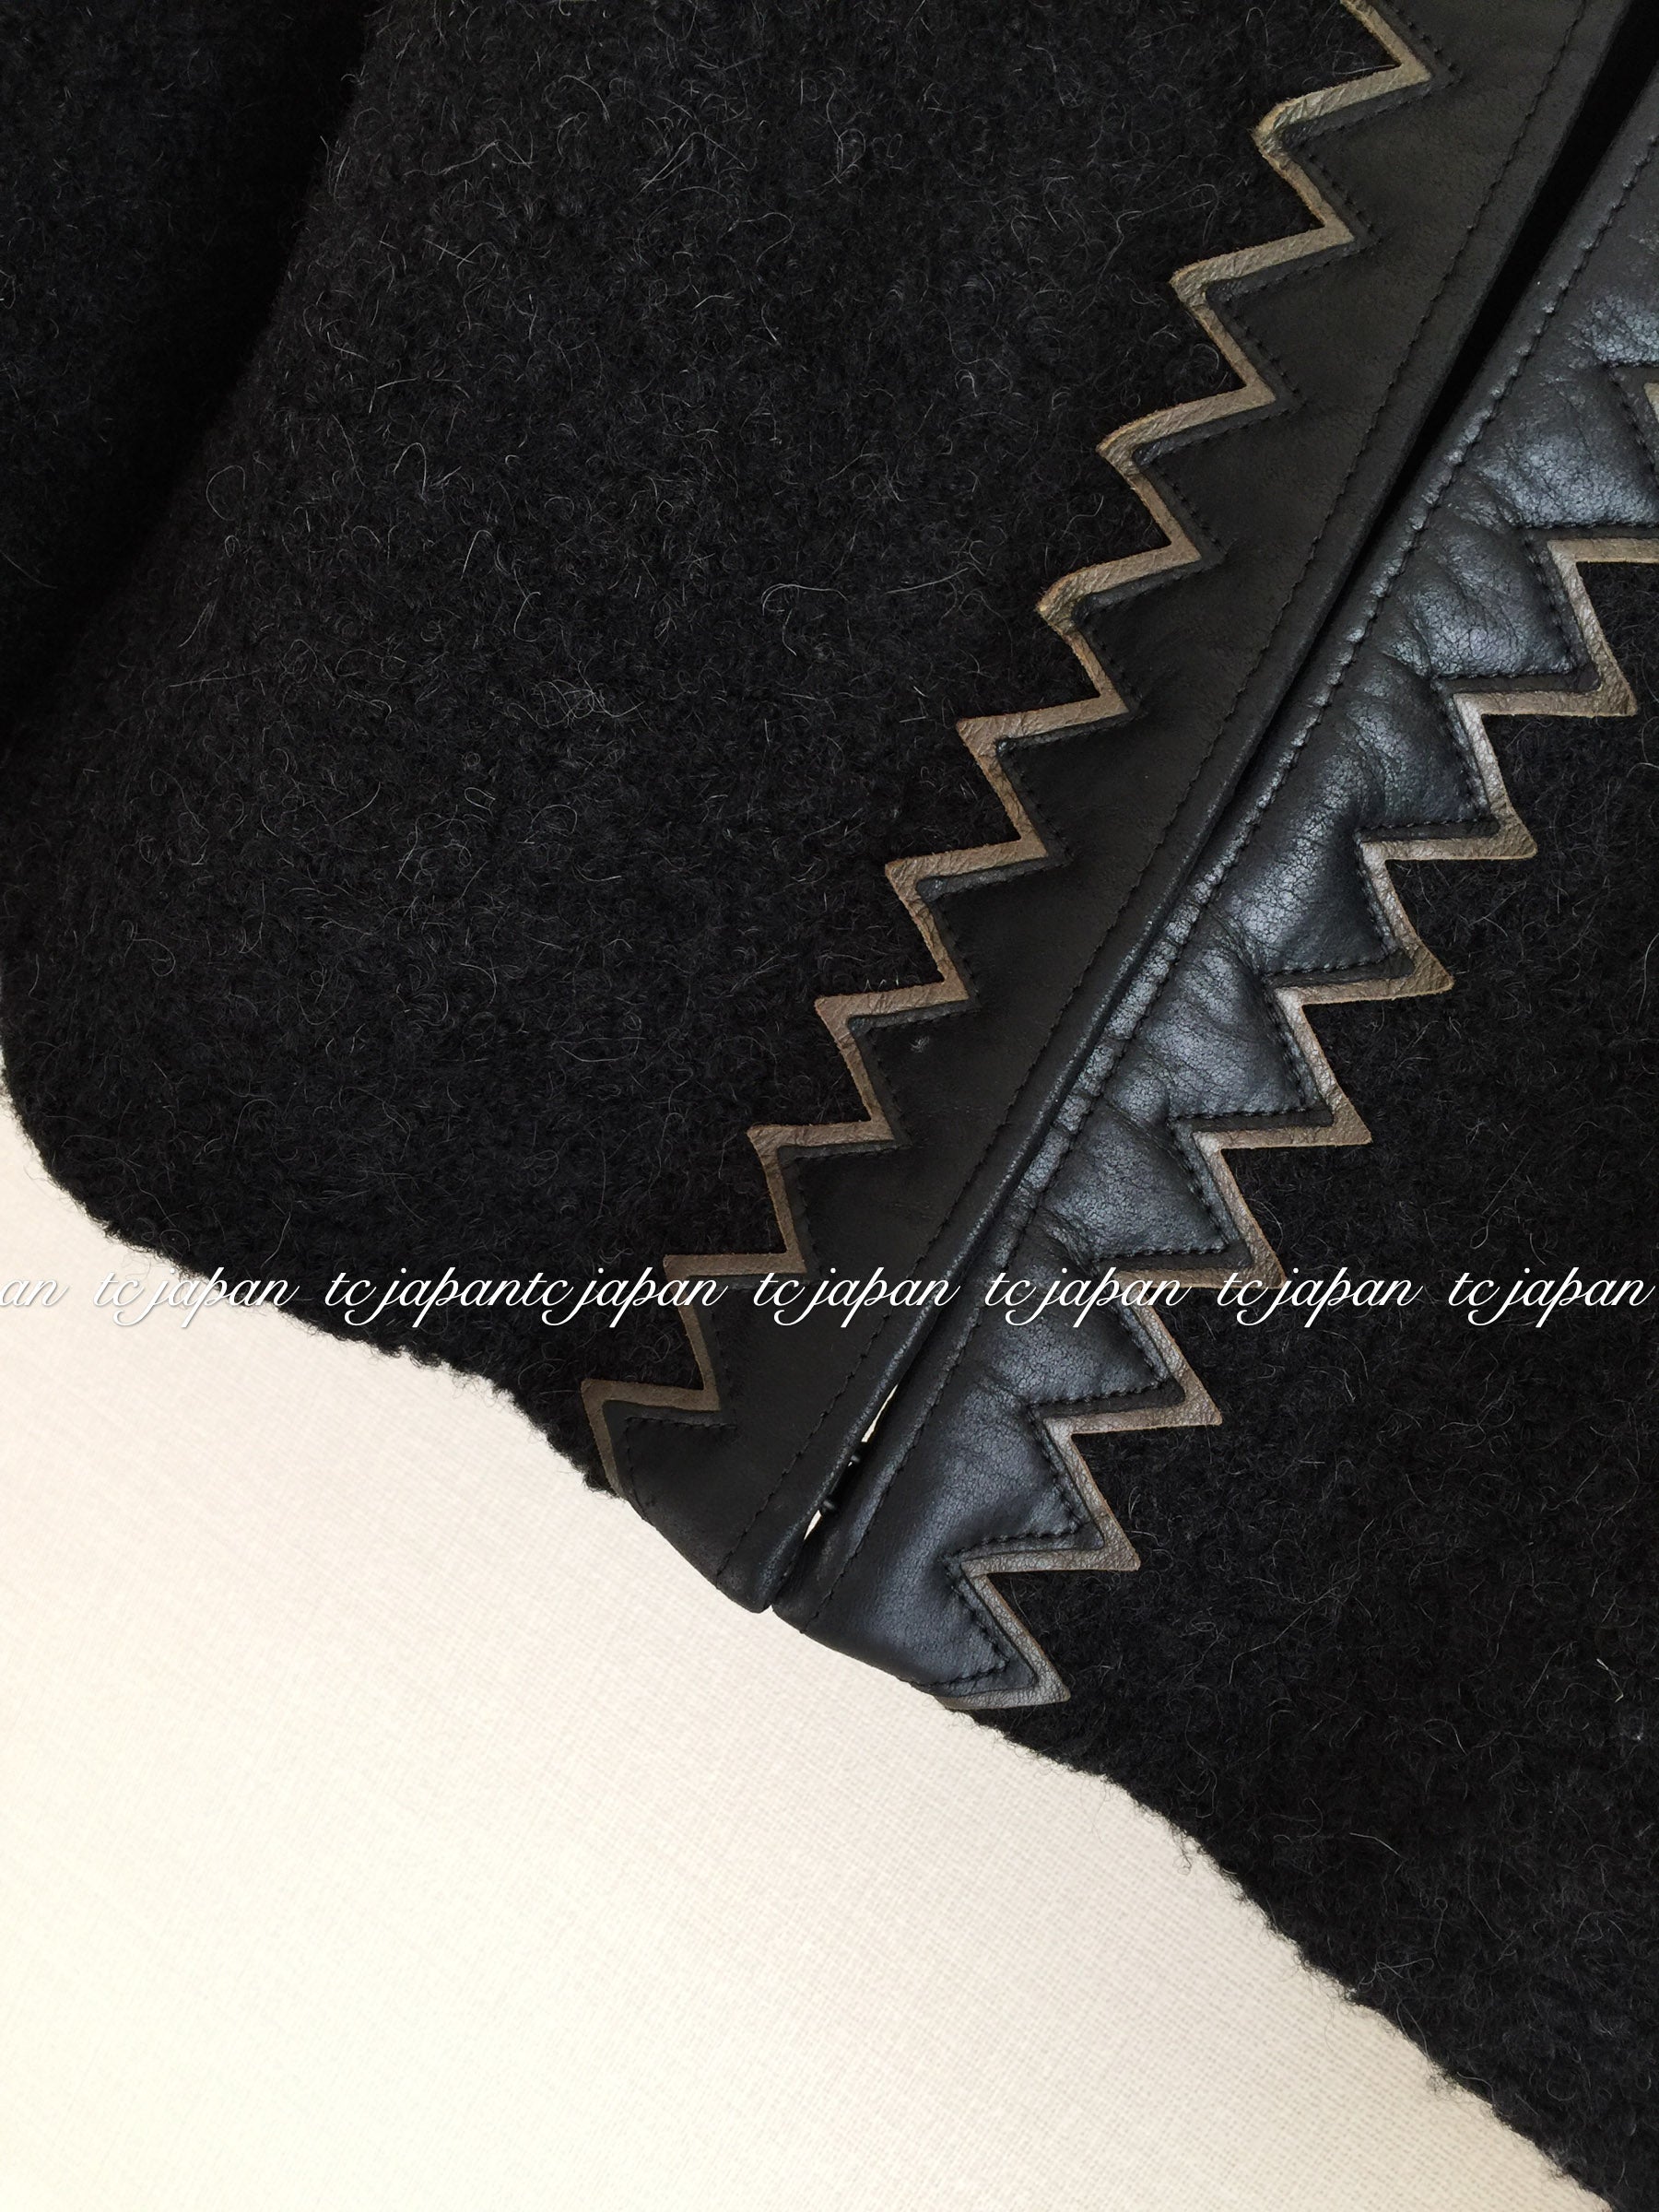 CHANEL 15PF Black Wool Mohair Leather Trim Jacket 36 40 シャネル ブラック・ウール・モヘア・レザートリム・ジャケット 即発